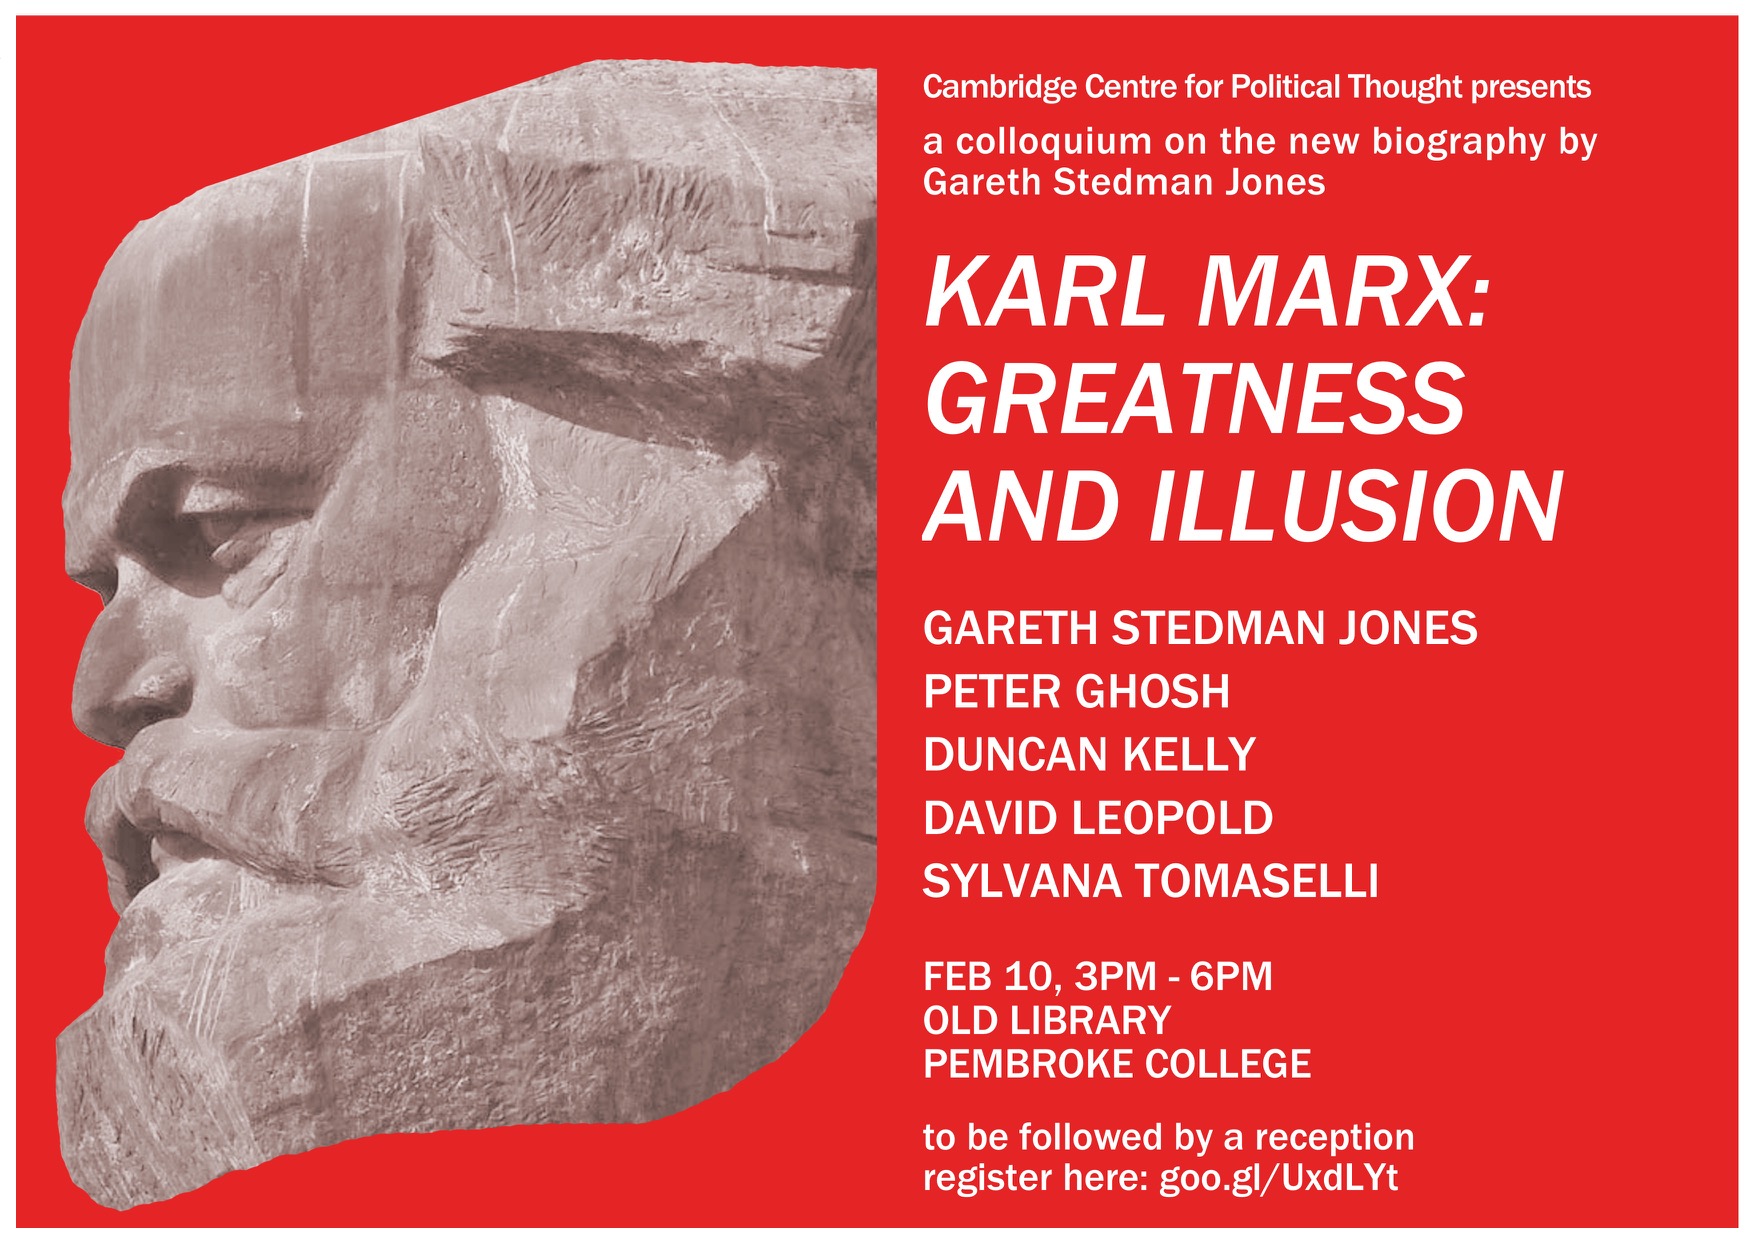 Gareth Stedman Jones - Marx Poster Landscape